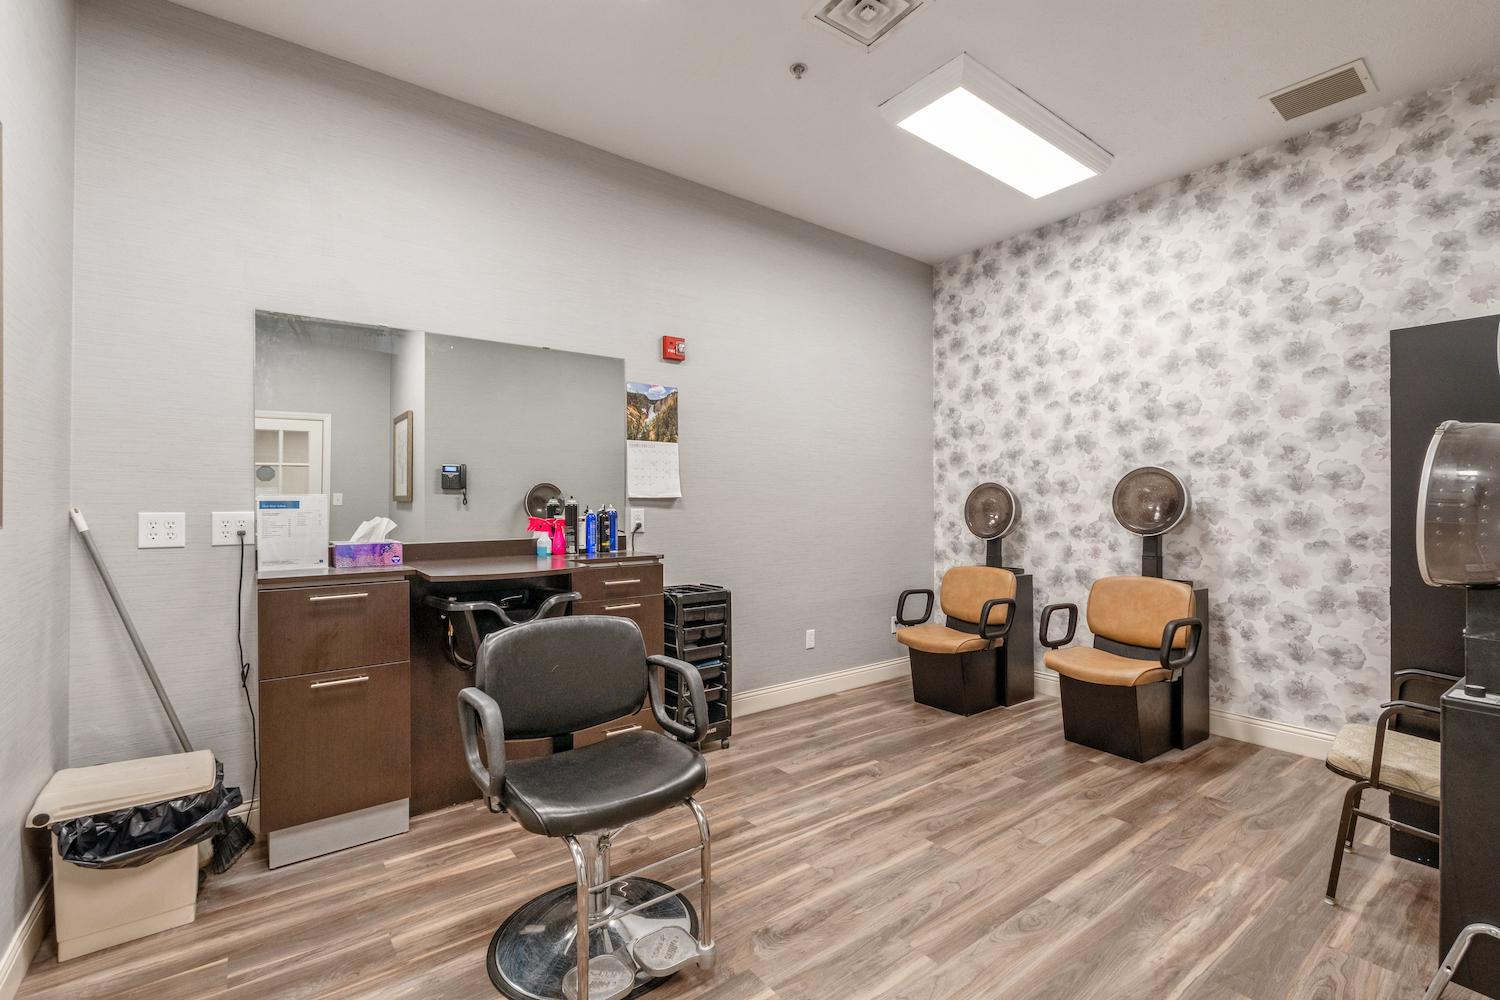 Five Star Residences of Noblesville beauty salon